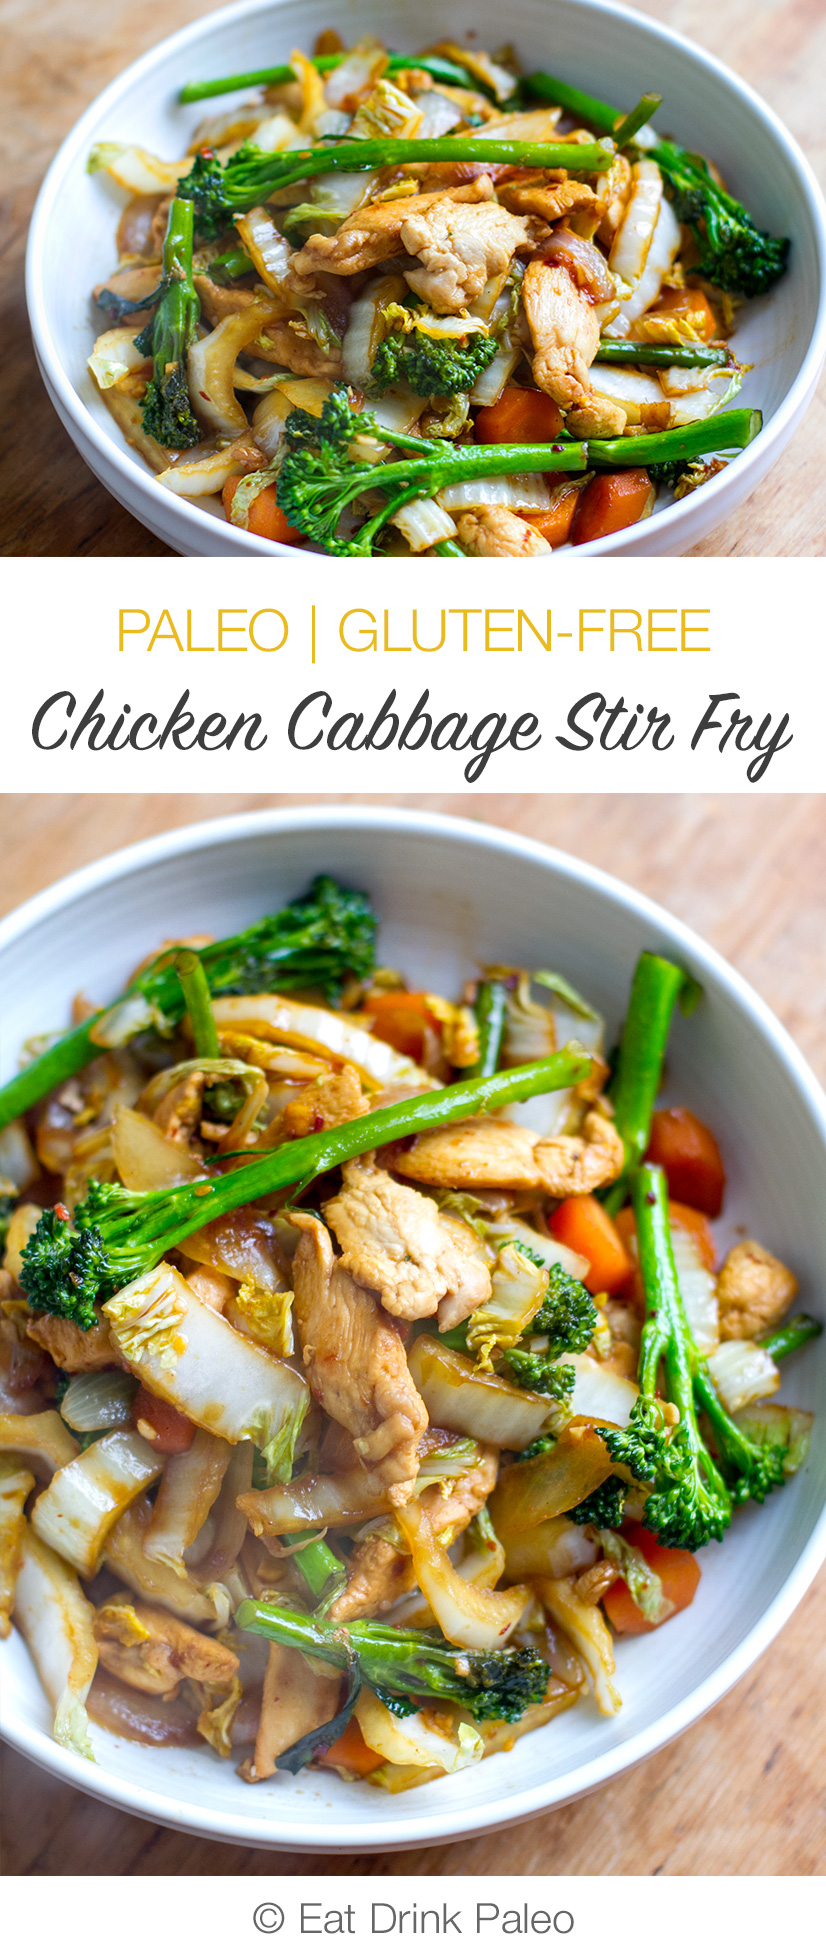 Chicken Cabbage Stir Fry (Paleo, Gluten-Free, Low-Carb)